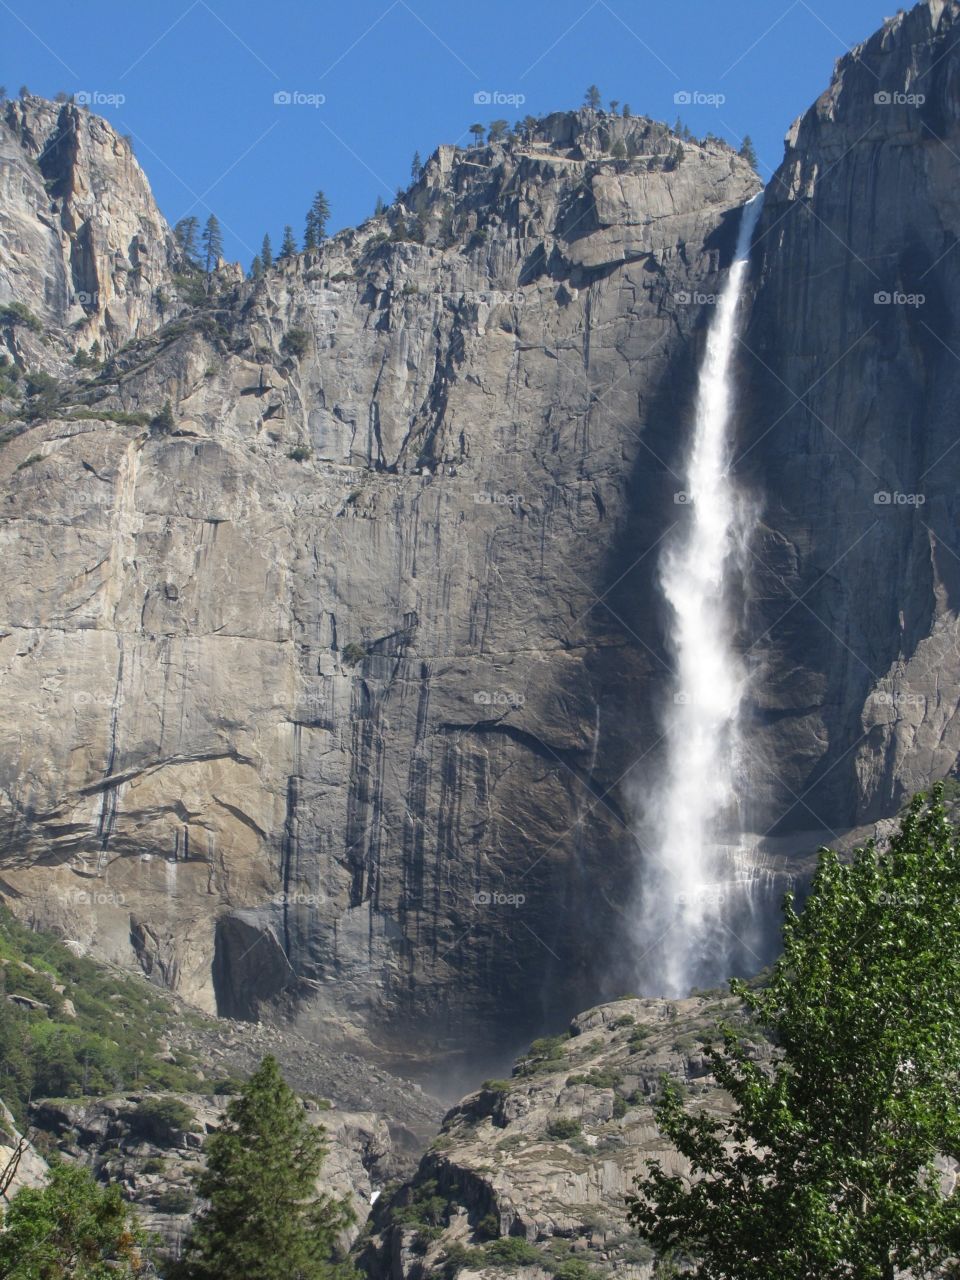 Yosemite falls. Waterfall